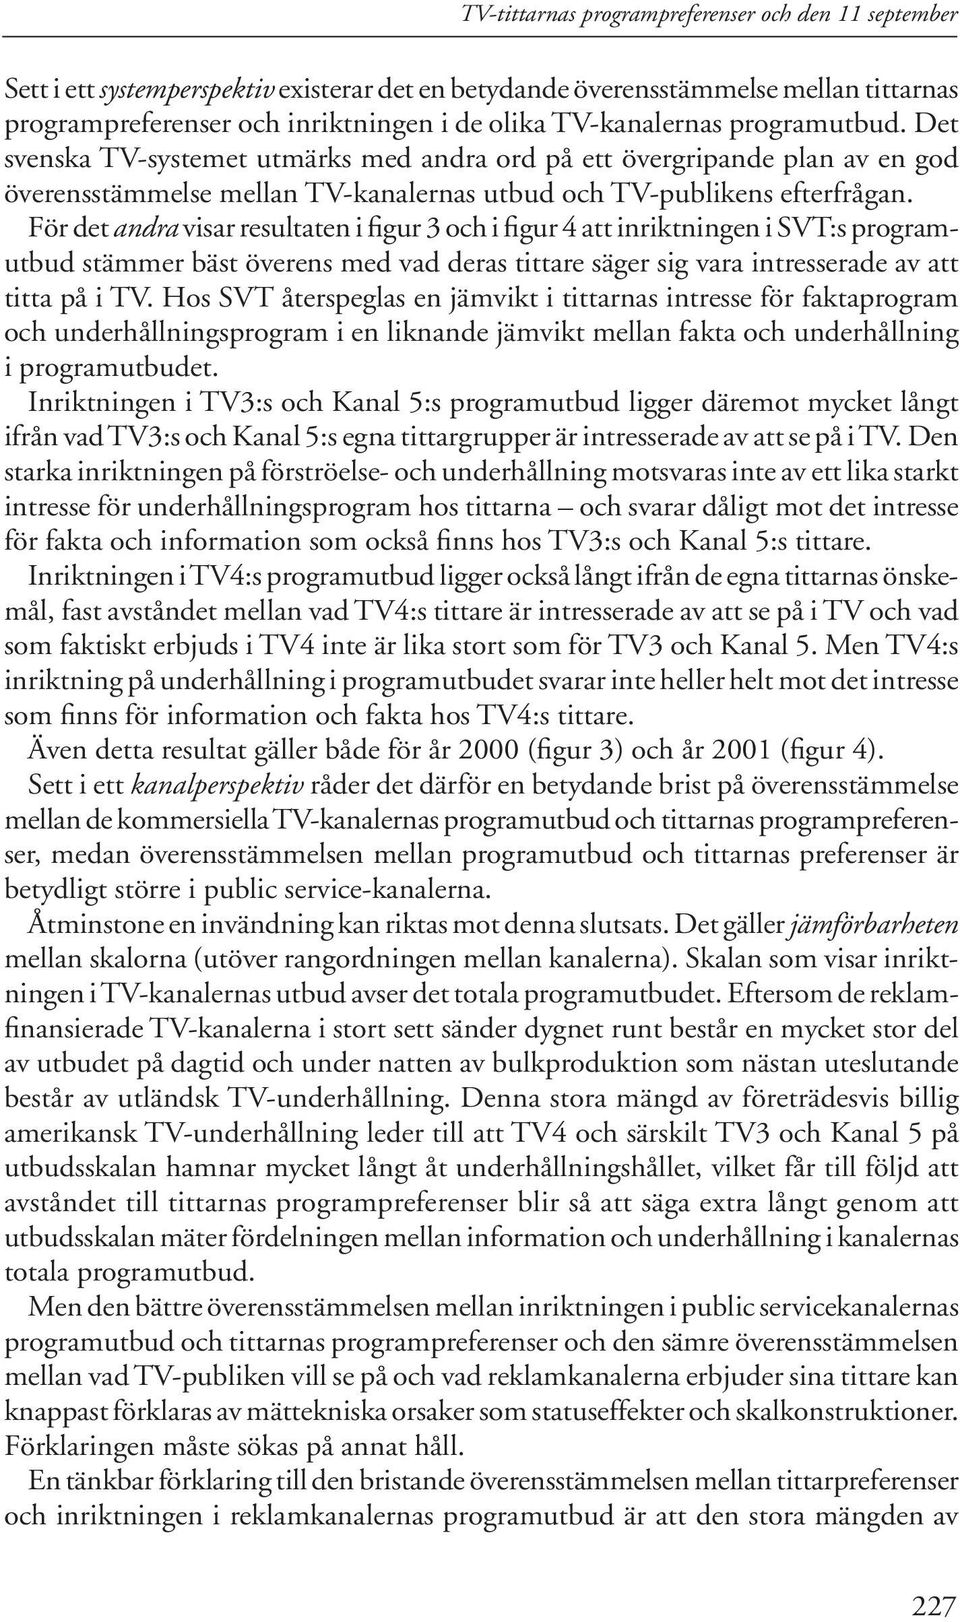 För det andra visar resultaten i figur 3 och i figur 4 att inriktningen i SVT:s program - utbud stämmer bäst överens med vad deras tittare säger sig vara intresserade av att titta på i TV.